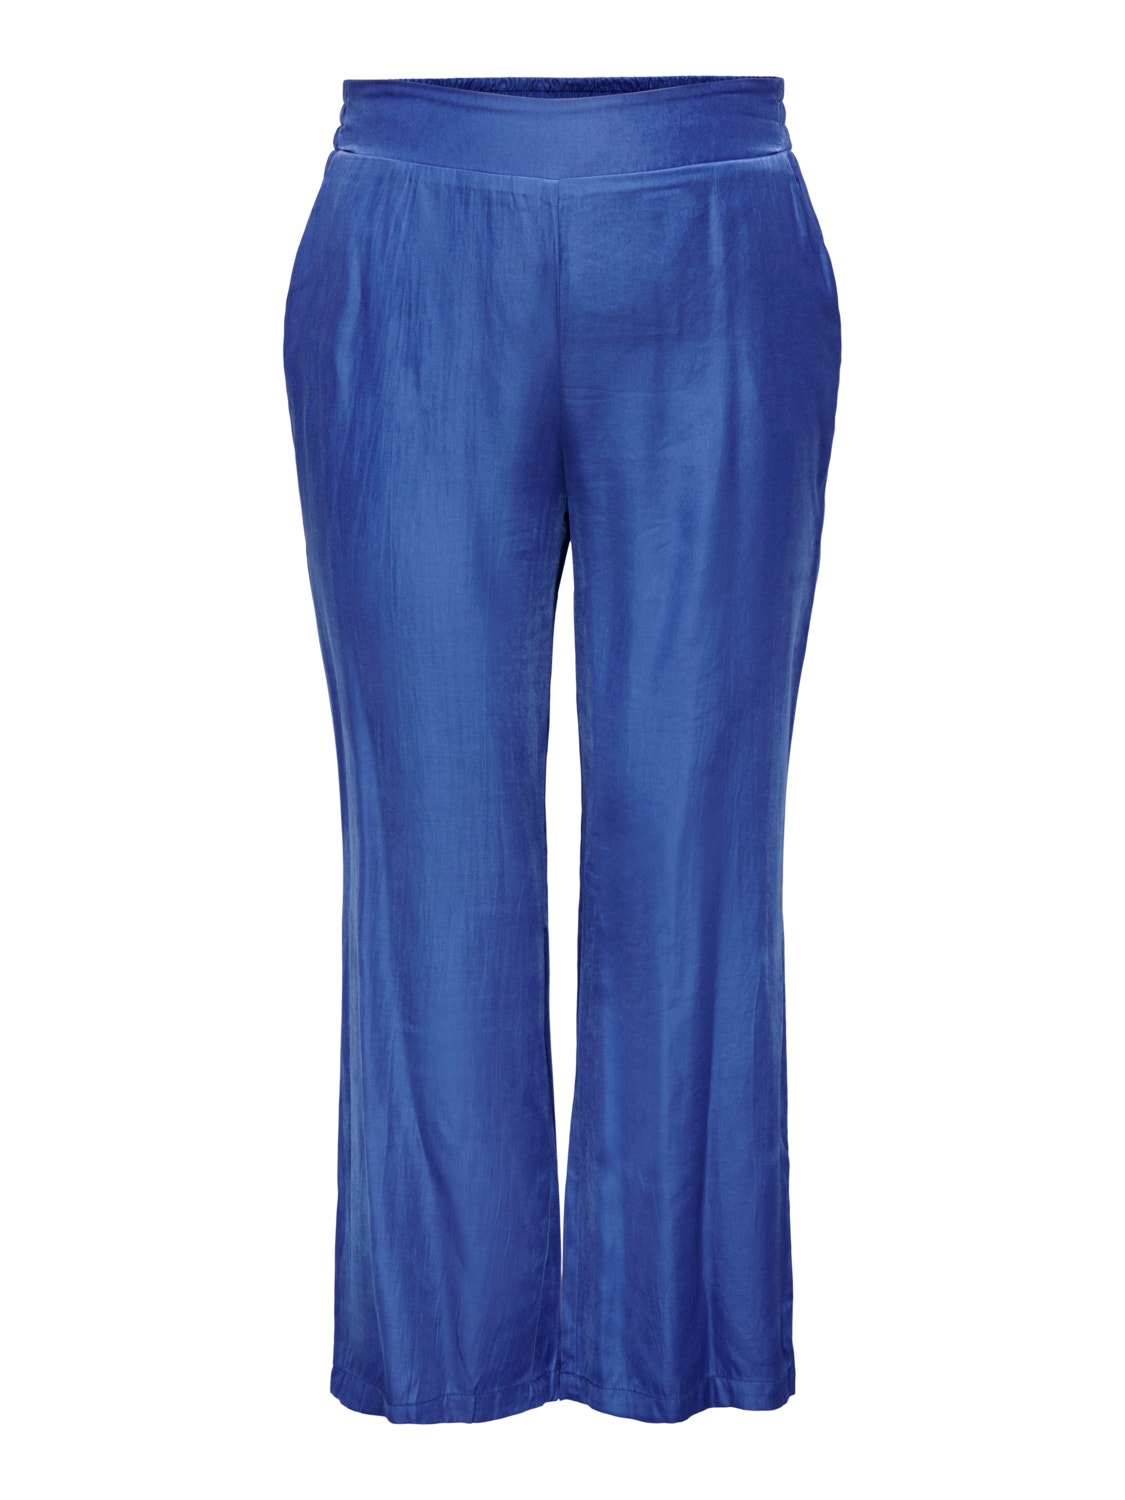 ONLY Curvy bukser med lav talje -Dazzling Blue - 15291596